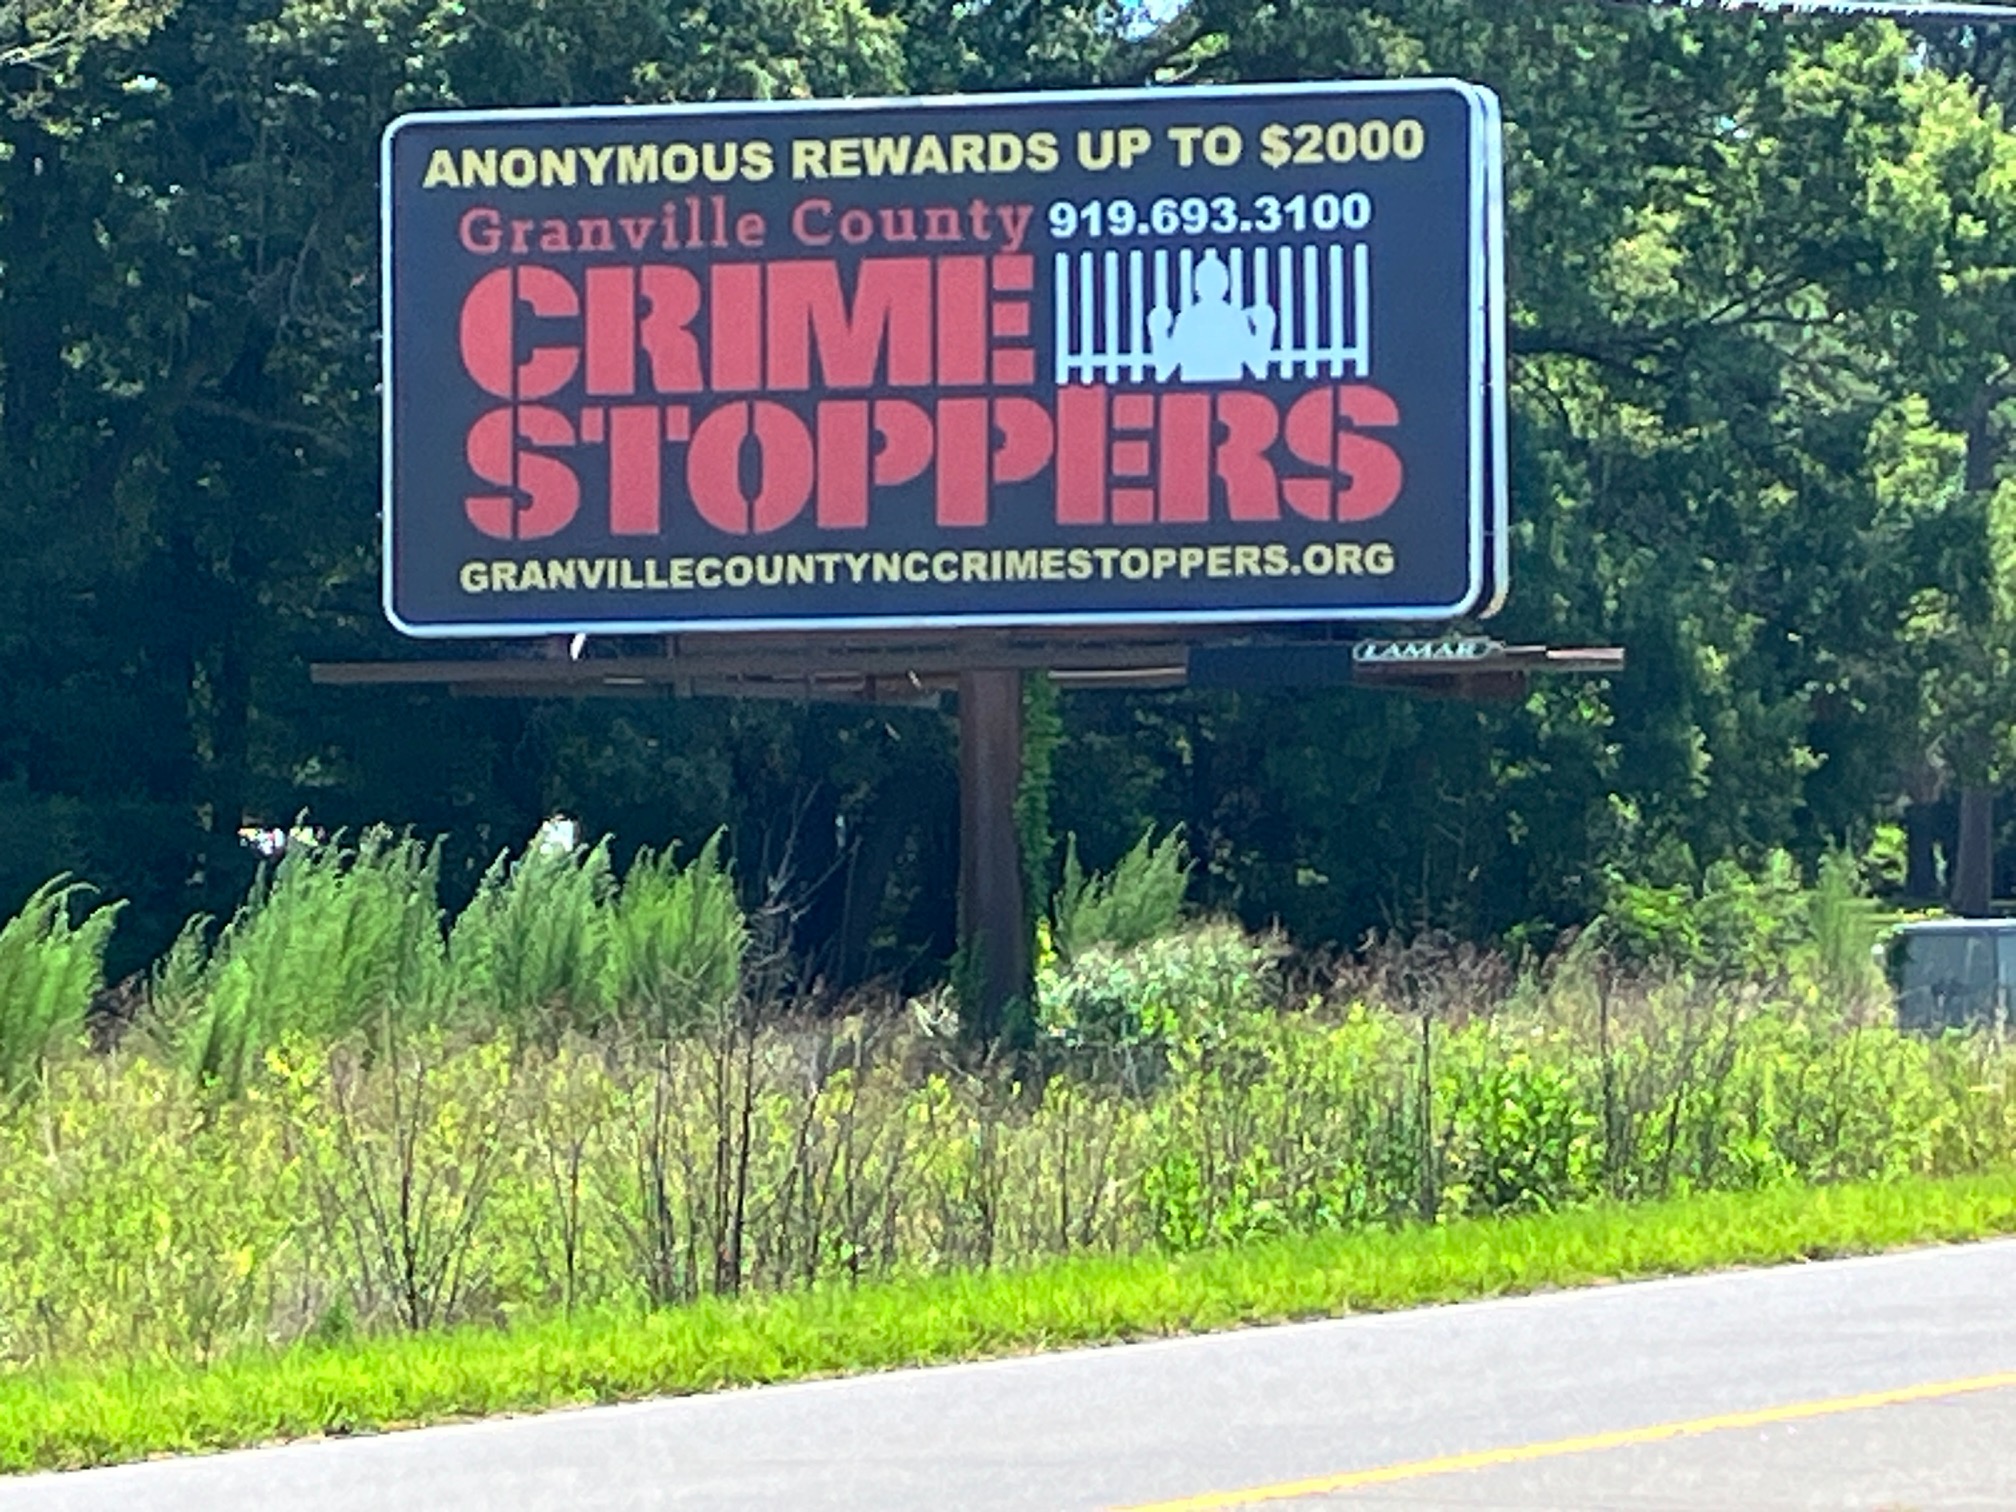 Granville County Crimestoppers